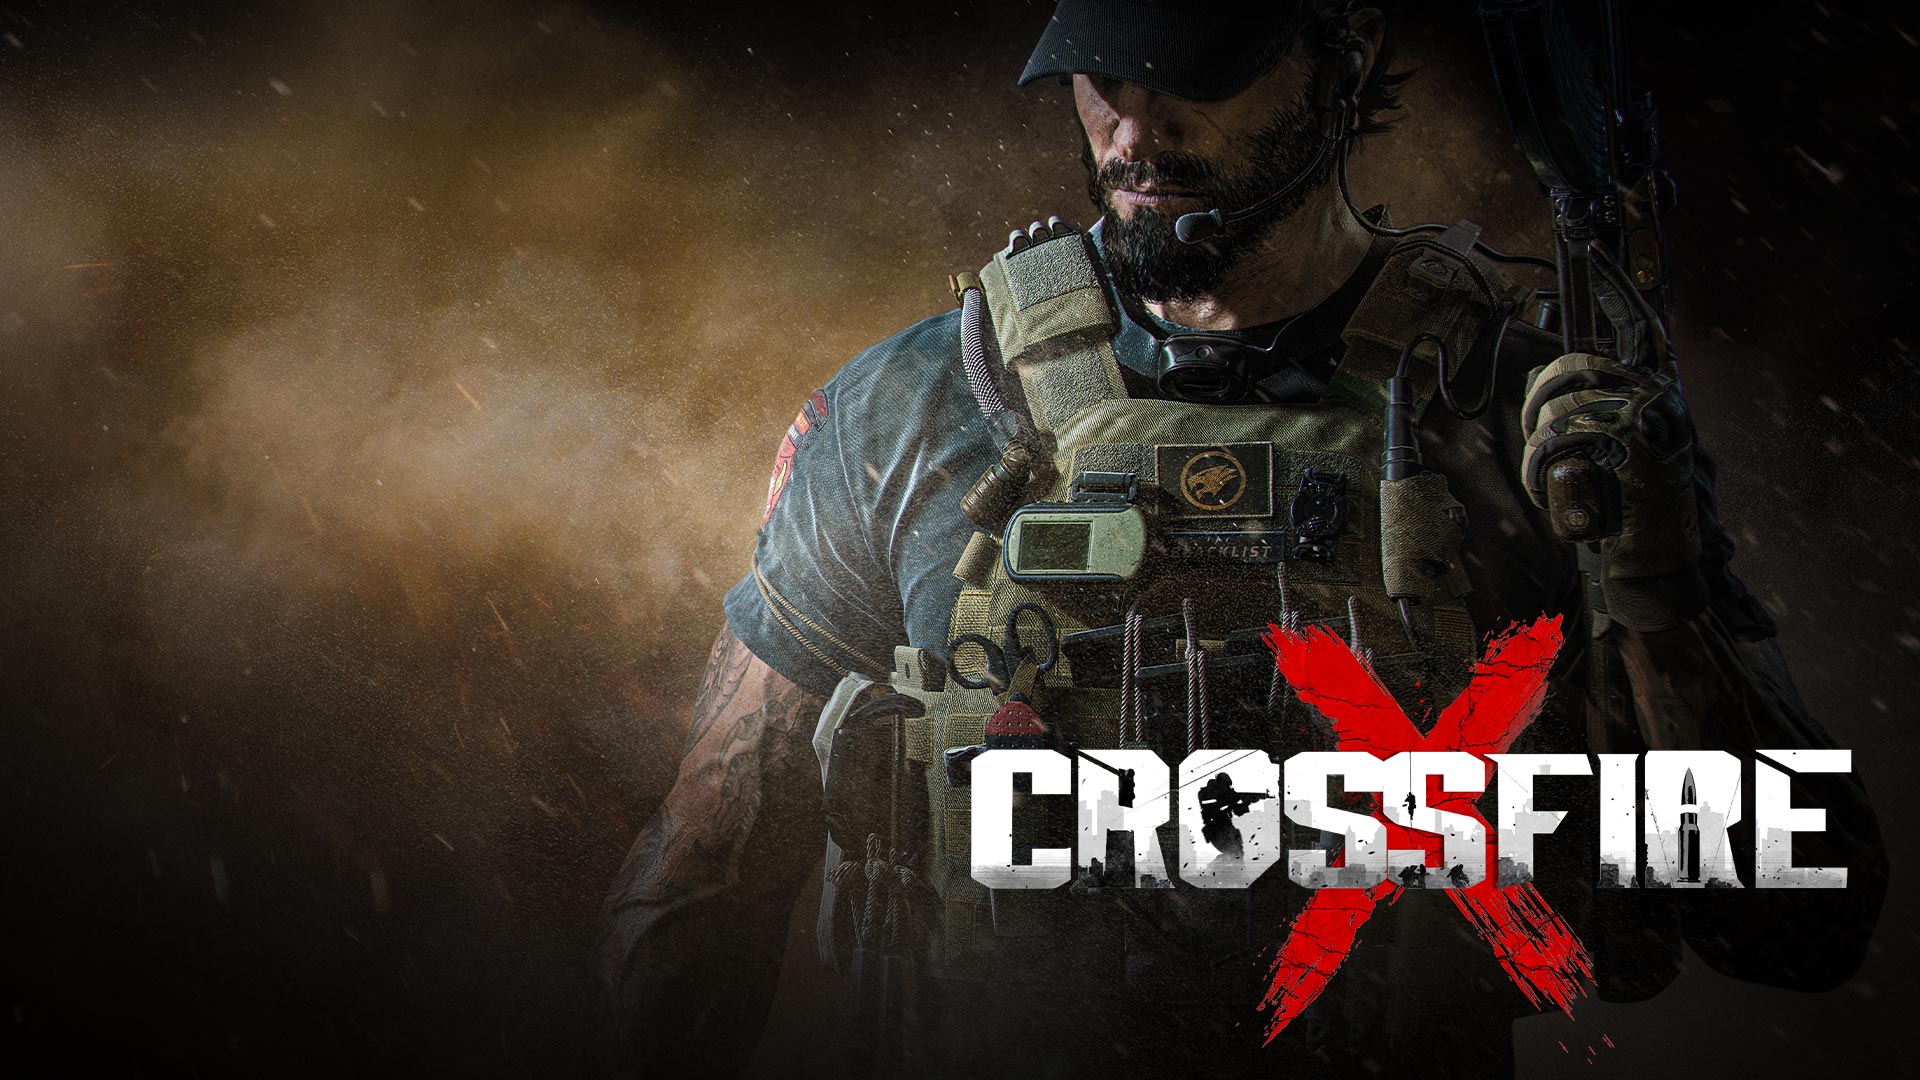 Há 10 novos jogos a chegar ao Game Pass: CrossFireX e Contrast na lista.  Mas atenção que vão sair alguns - Multimédia - SAPO Tek